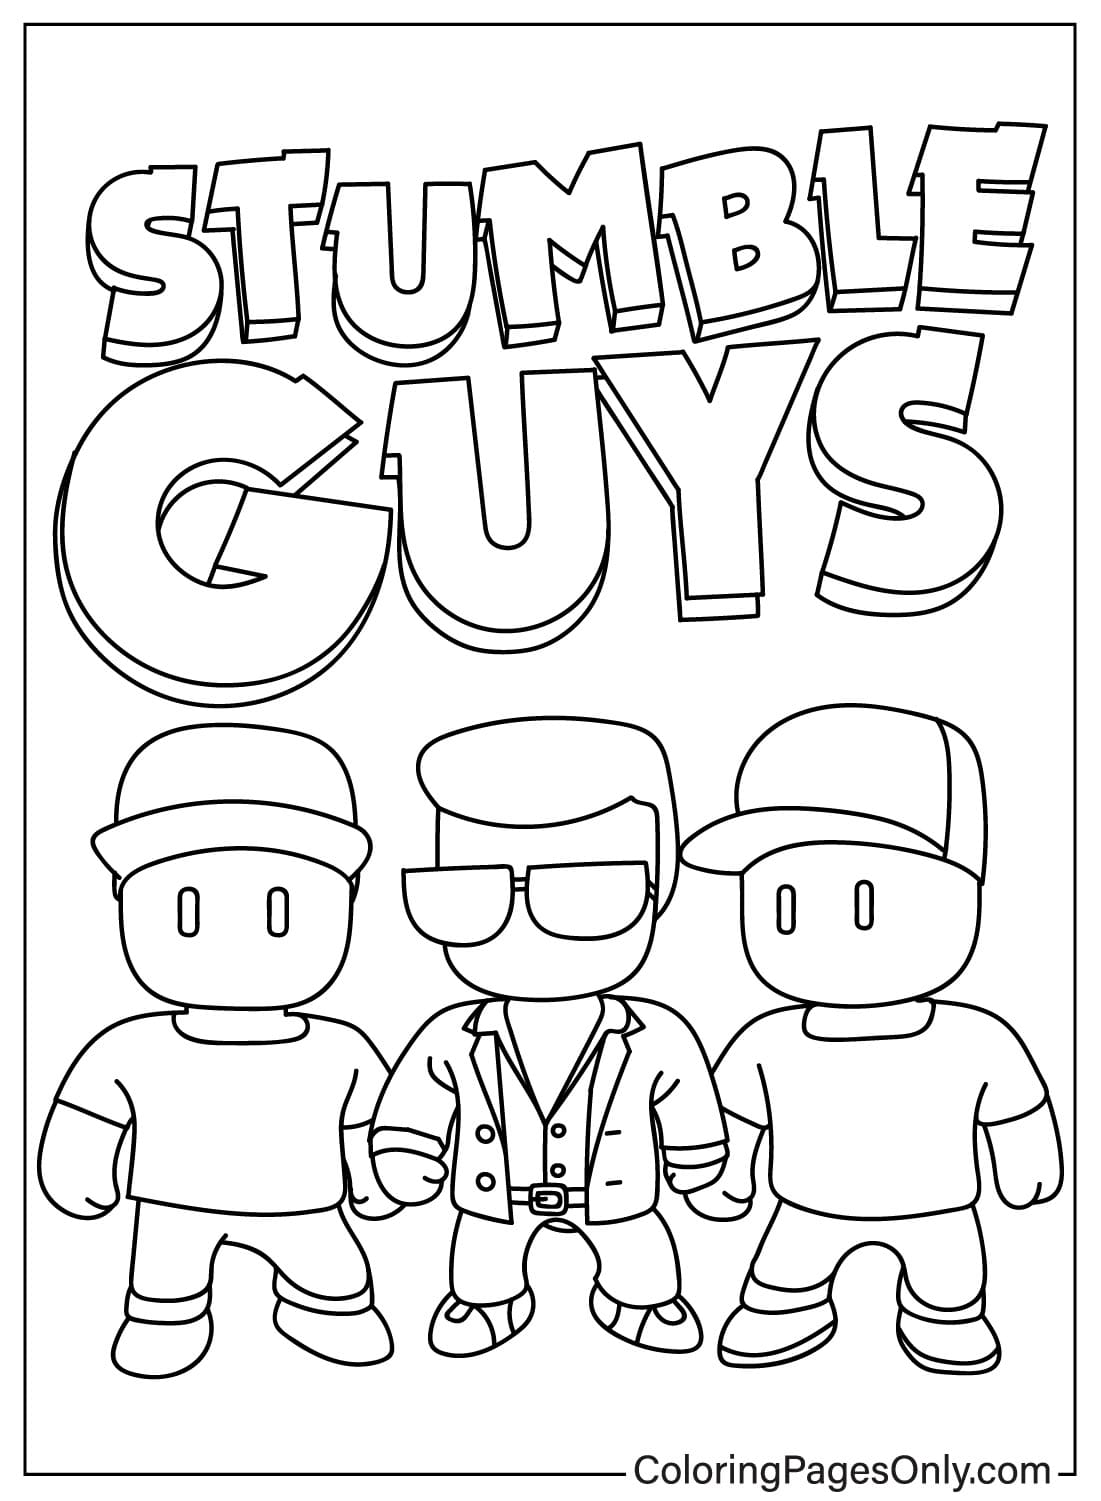 Stumble Guys kleurplaat afdrukken van Stumble Guys